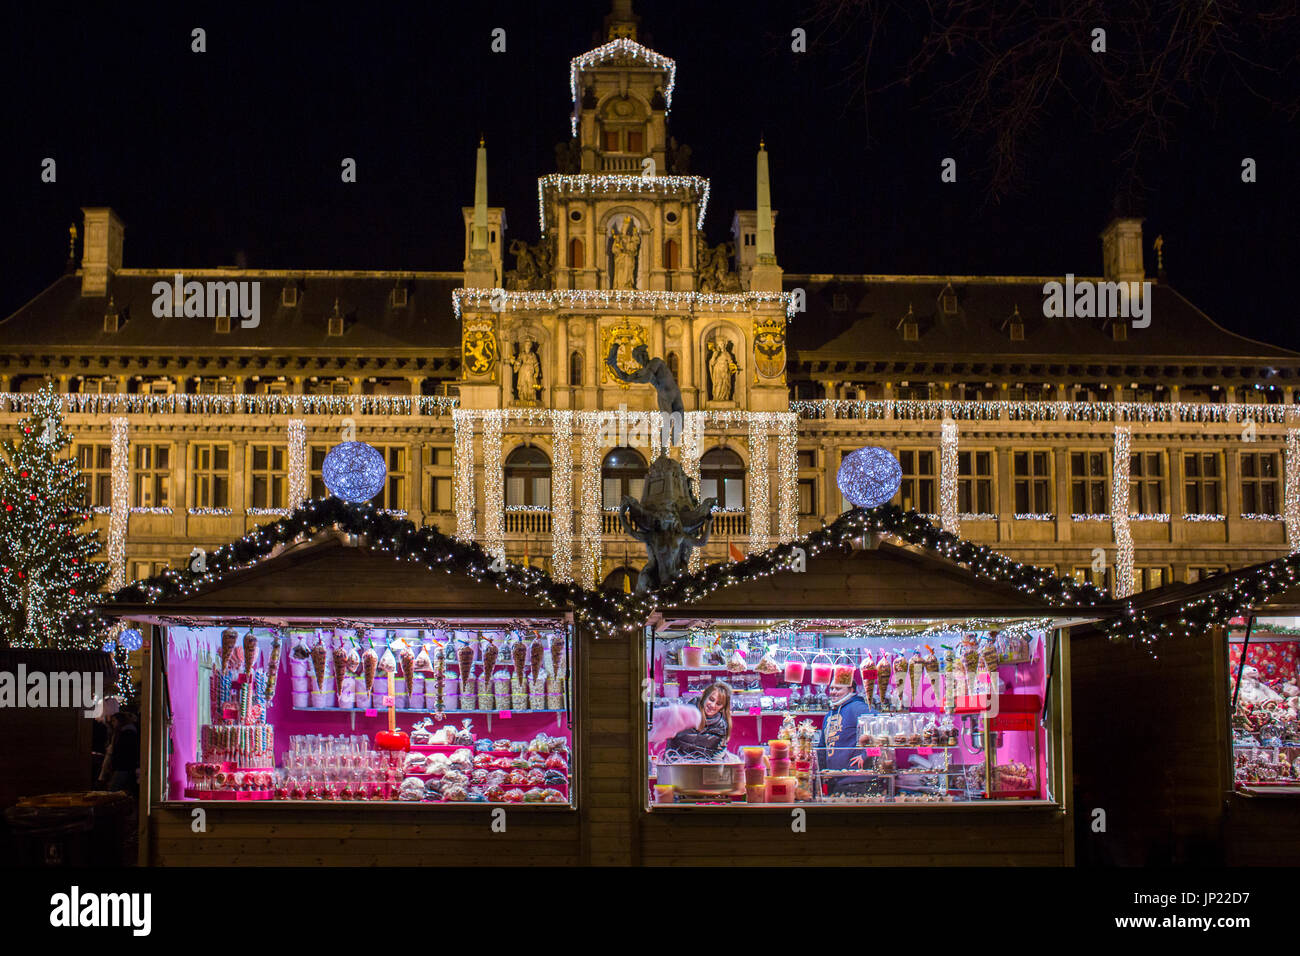 Antwerpen, Belgien - 13. Dezember 2013: Weihnachtsmarkt Stände und Dekorationen auf dem Hauptplatz, Antwerpen mit Flutlicht Rathaus hinter. Stockfoto